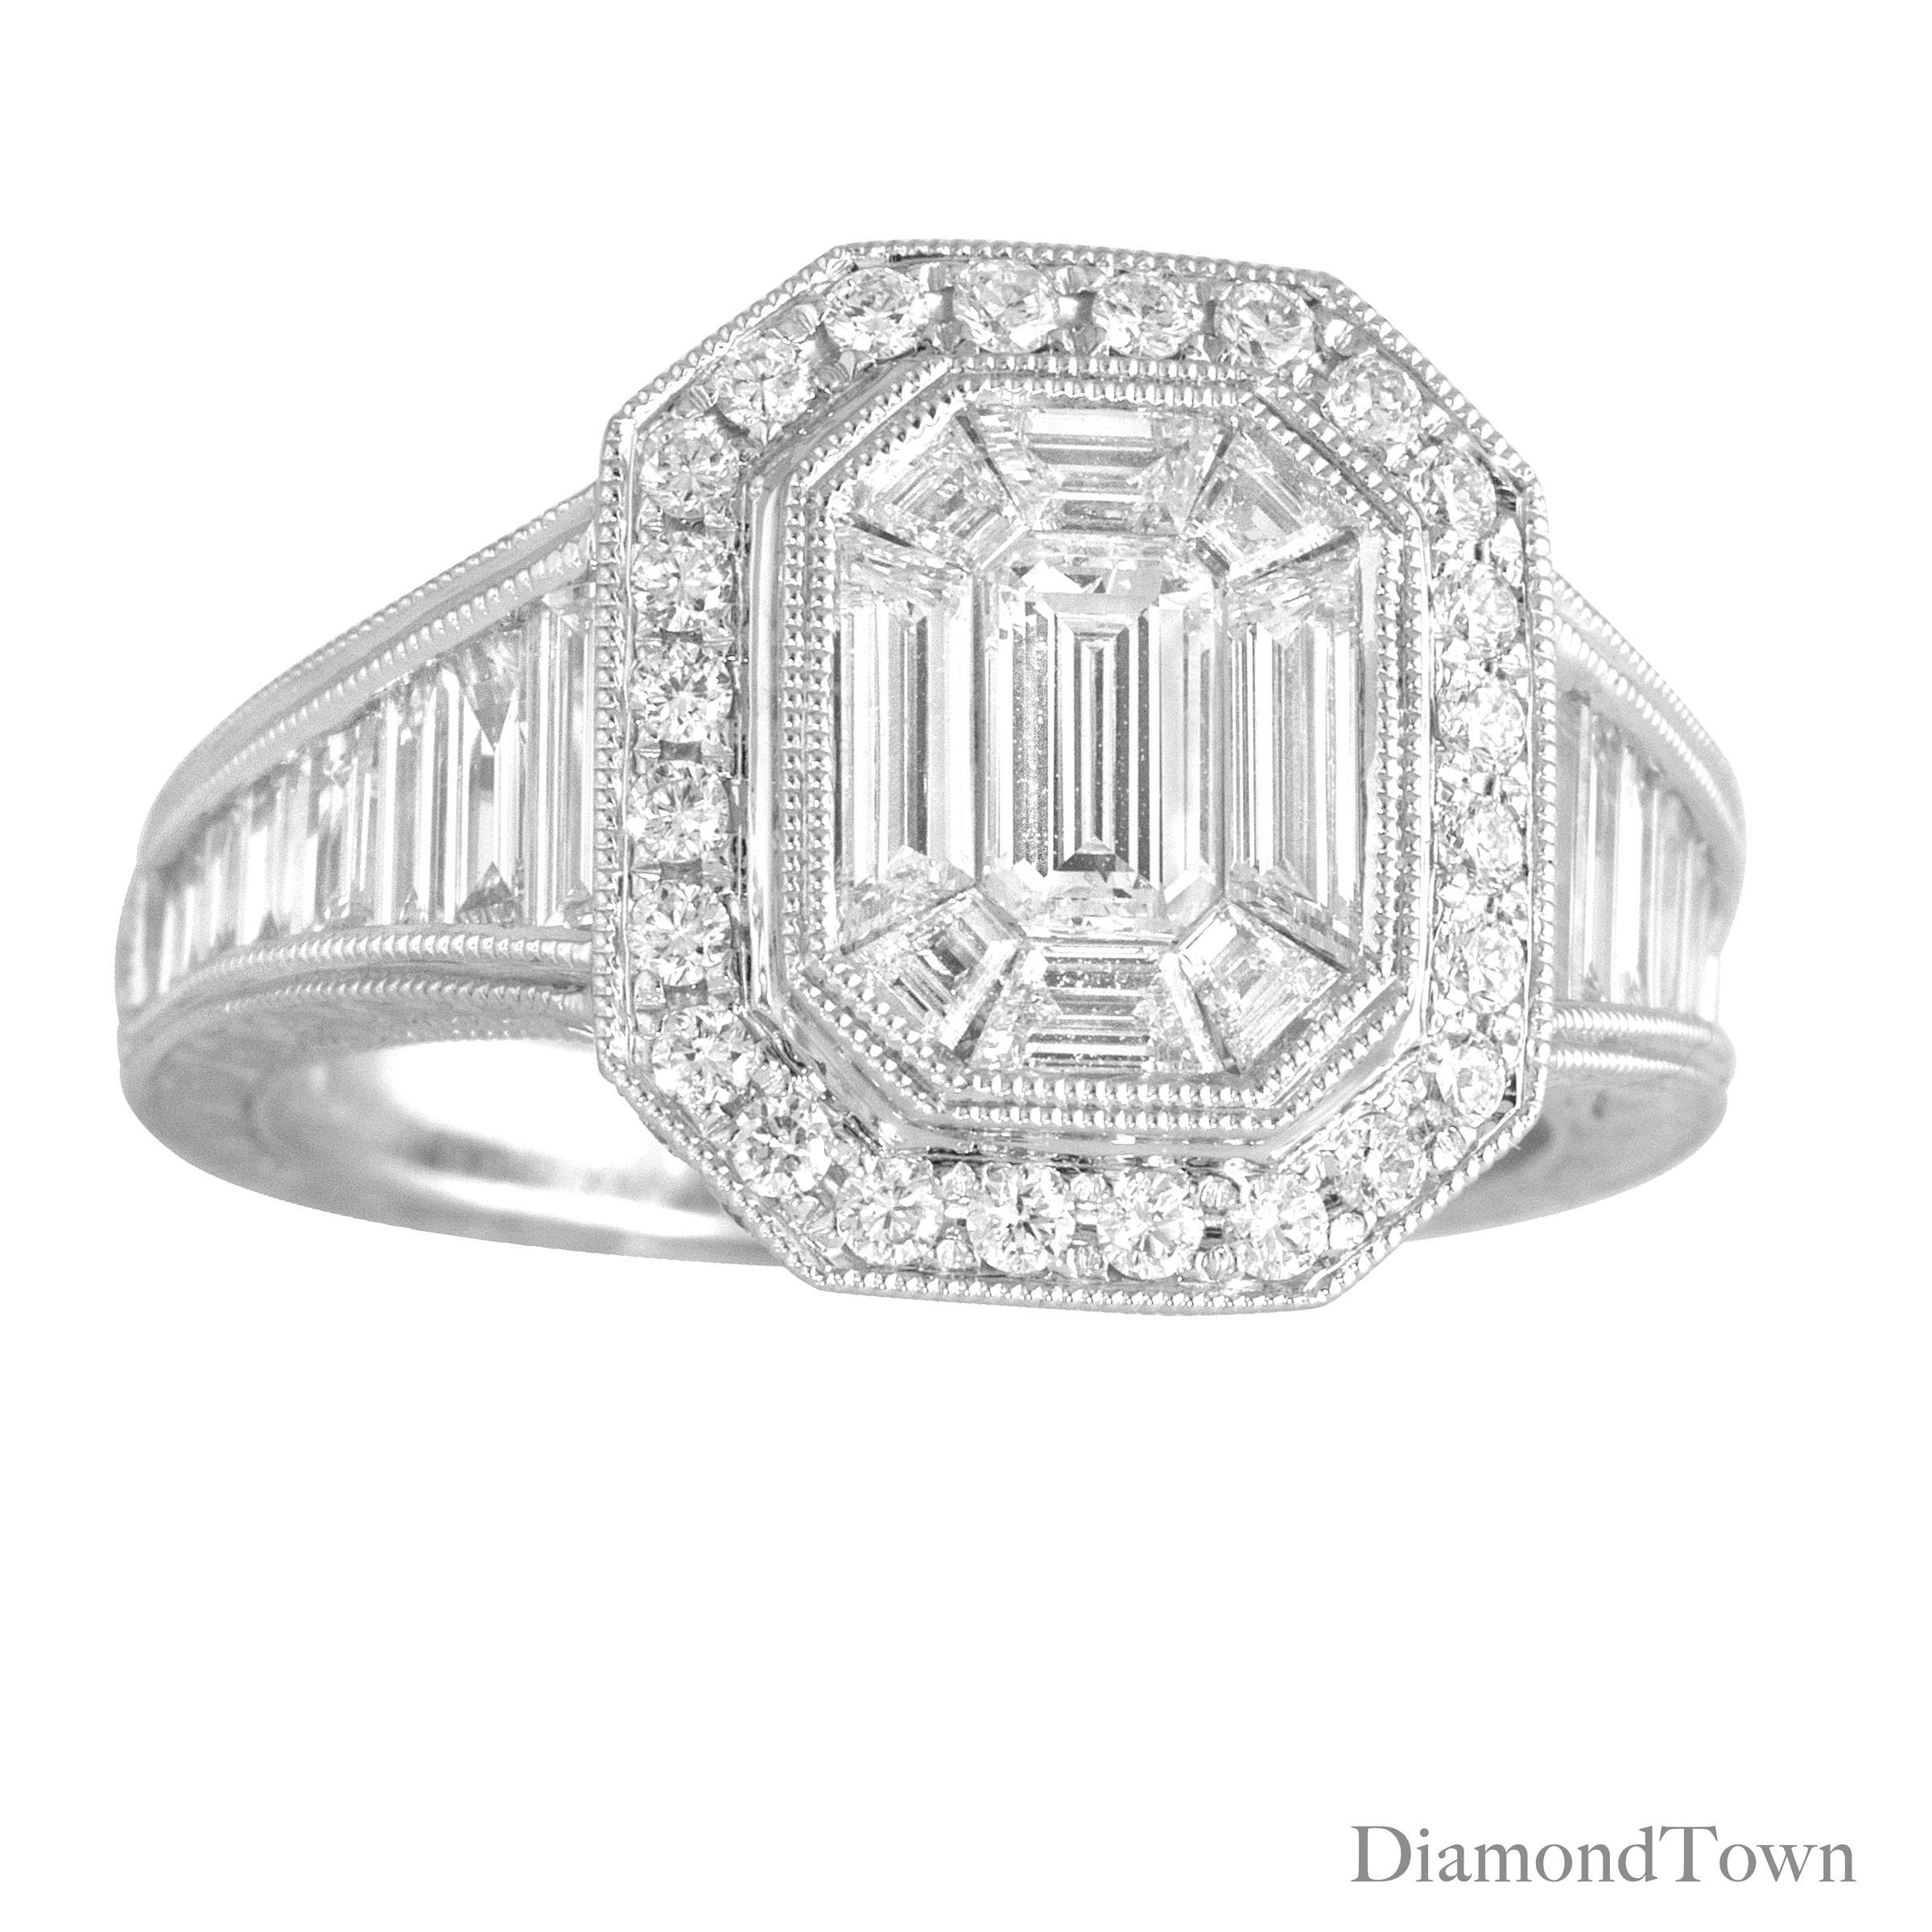 DiamondTown 2.31 Carat Baguette and Round Cluster Diamond Ring in 18k White Gold (Zeitgenössisch)